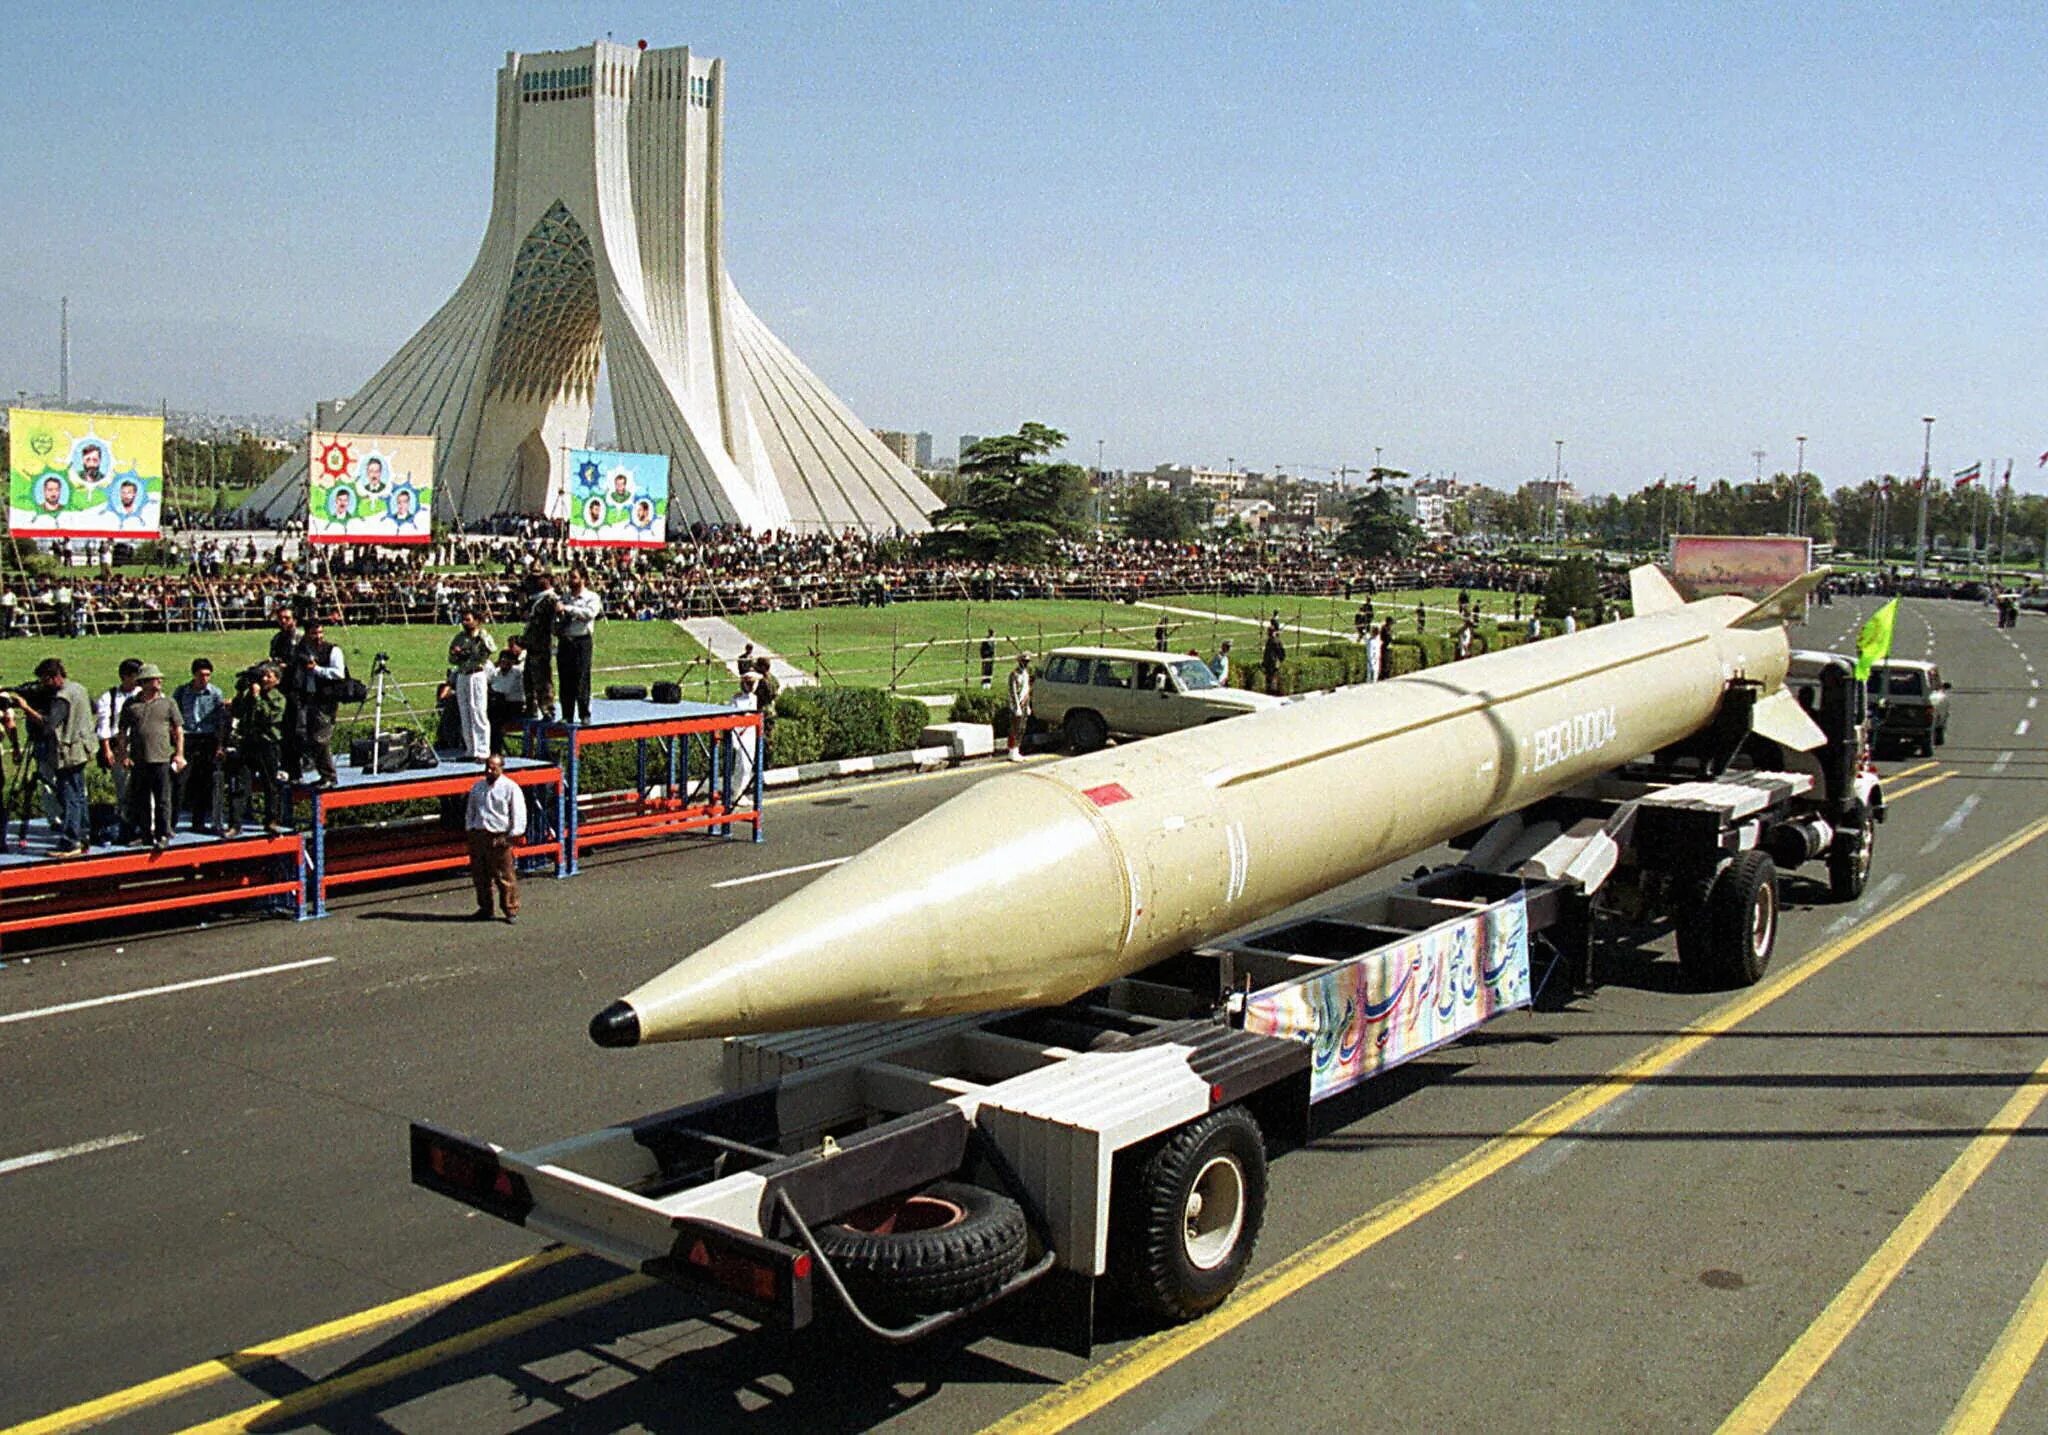 Сколько ядерного оружия у ирана. Ракета Шехаб-1 Иран. Ракета Шехаб-2 Иран. Шахаб-3 баллистическая ракета. Баллистические ракеты Ирана.